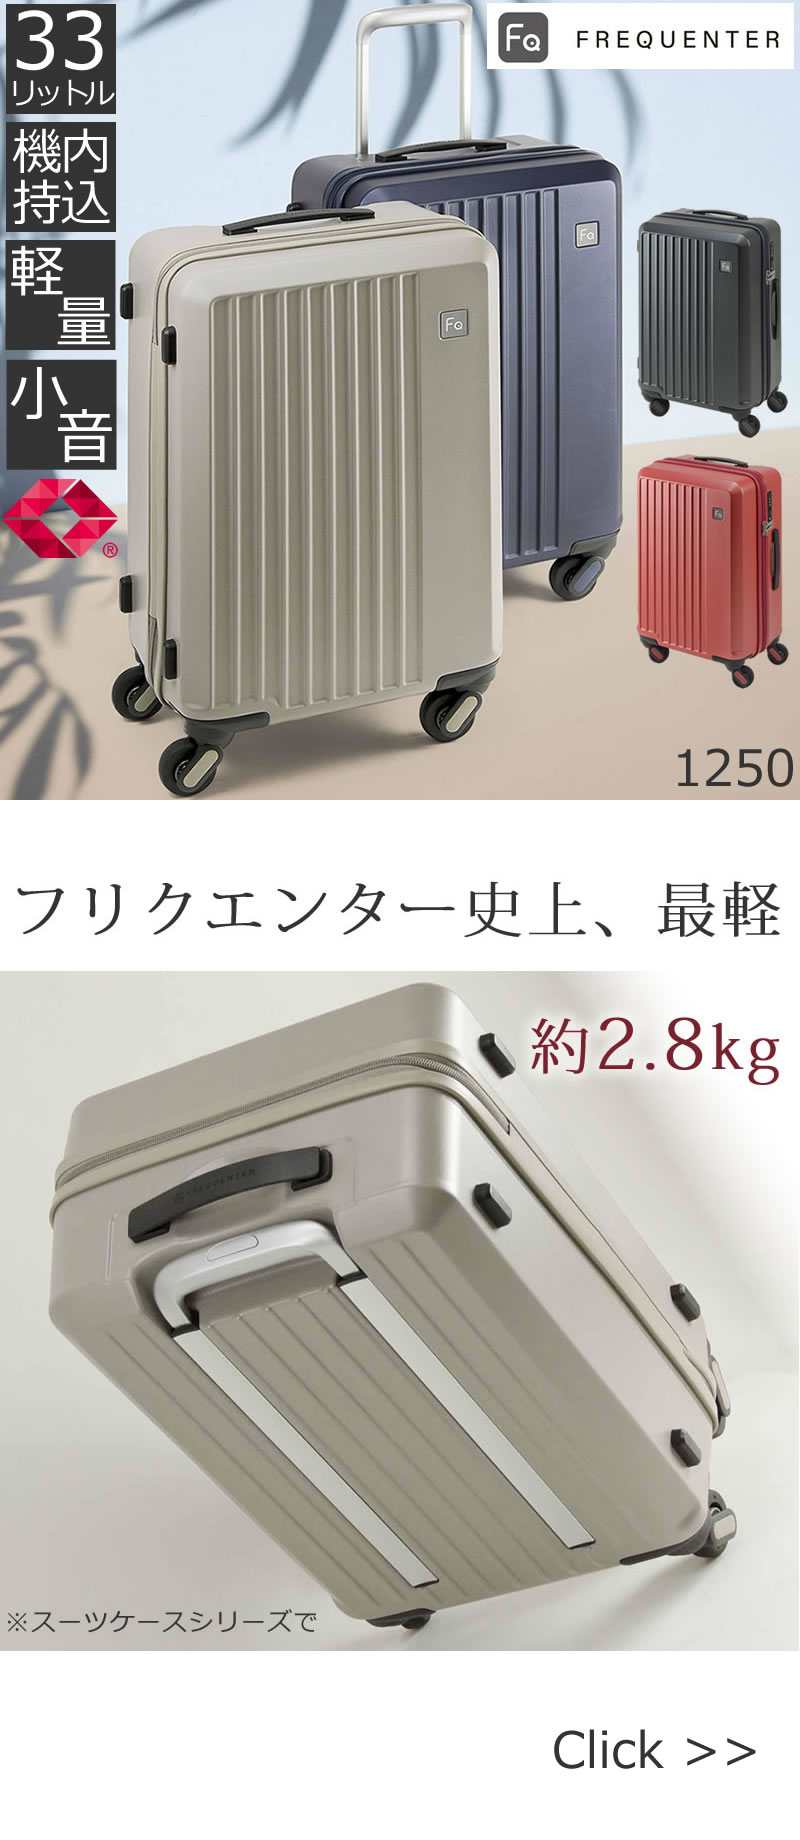 フリクエンター最軽量スーツケース1250